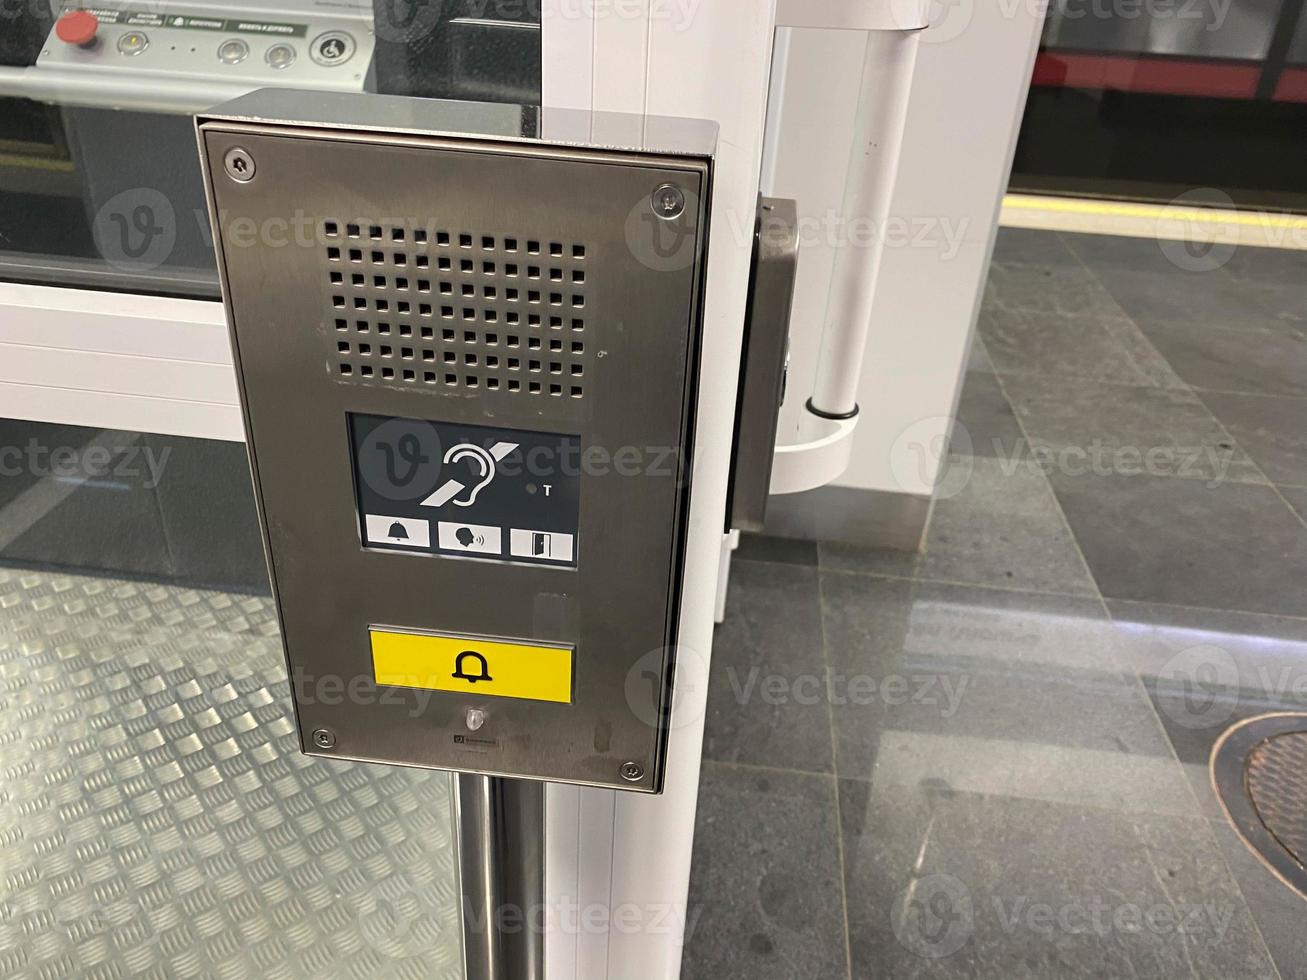 gran botón de llamada para un ascensor inclusivo en el metro o centro comercial para personas con discapacidad y personas con discapacidad para un entorno sin barreras en la ciudad foto